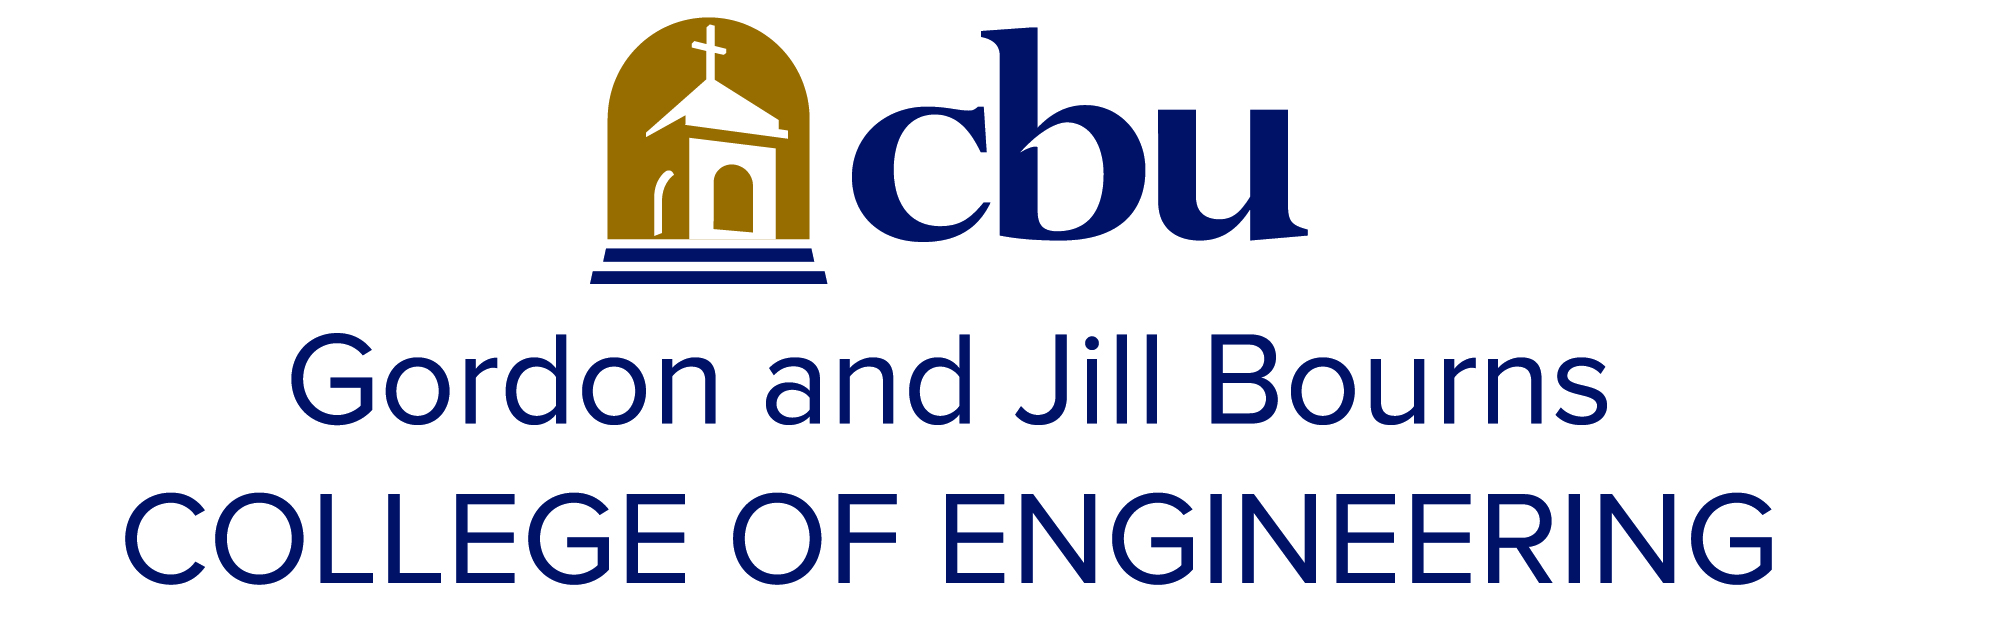 CBU Engineering